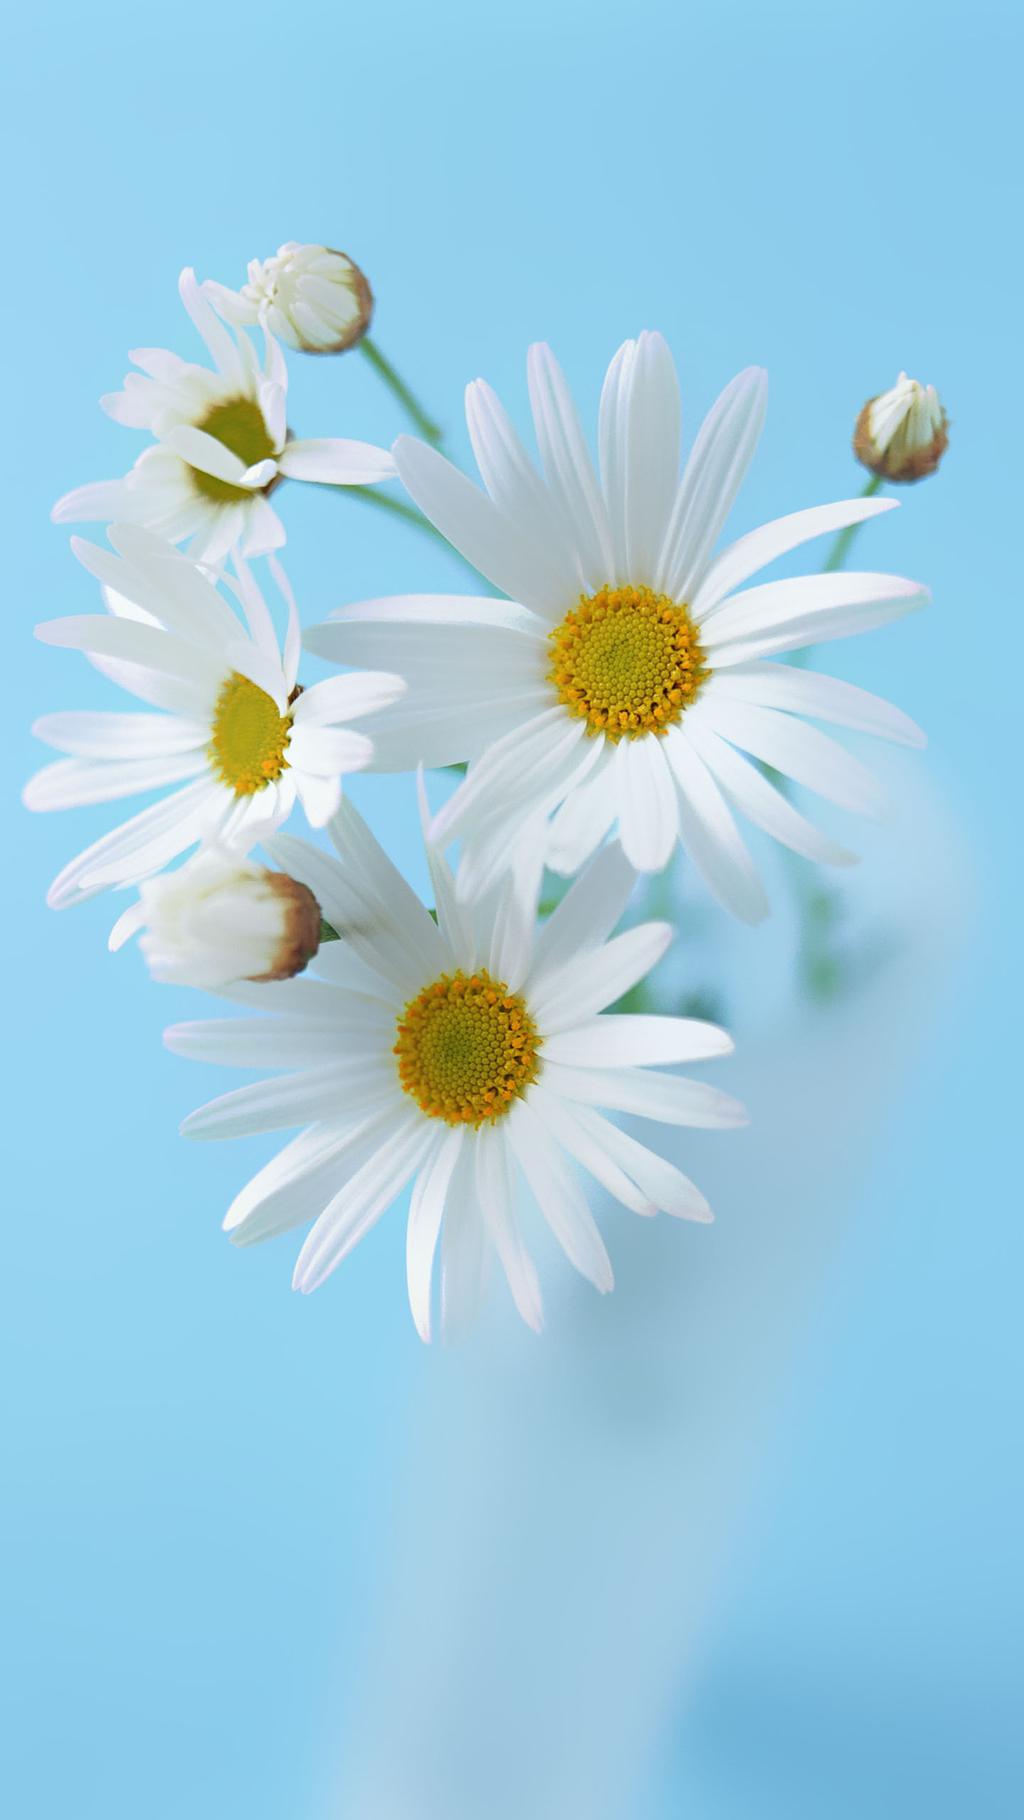 Hoa cúc trắng rên nền xanh nổi bật. (Ảnh: Internet)